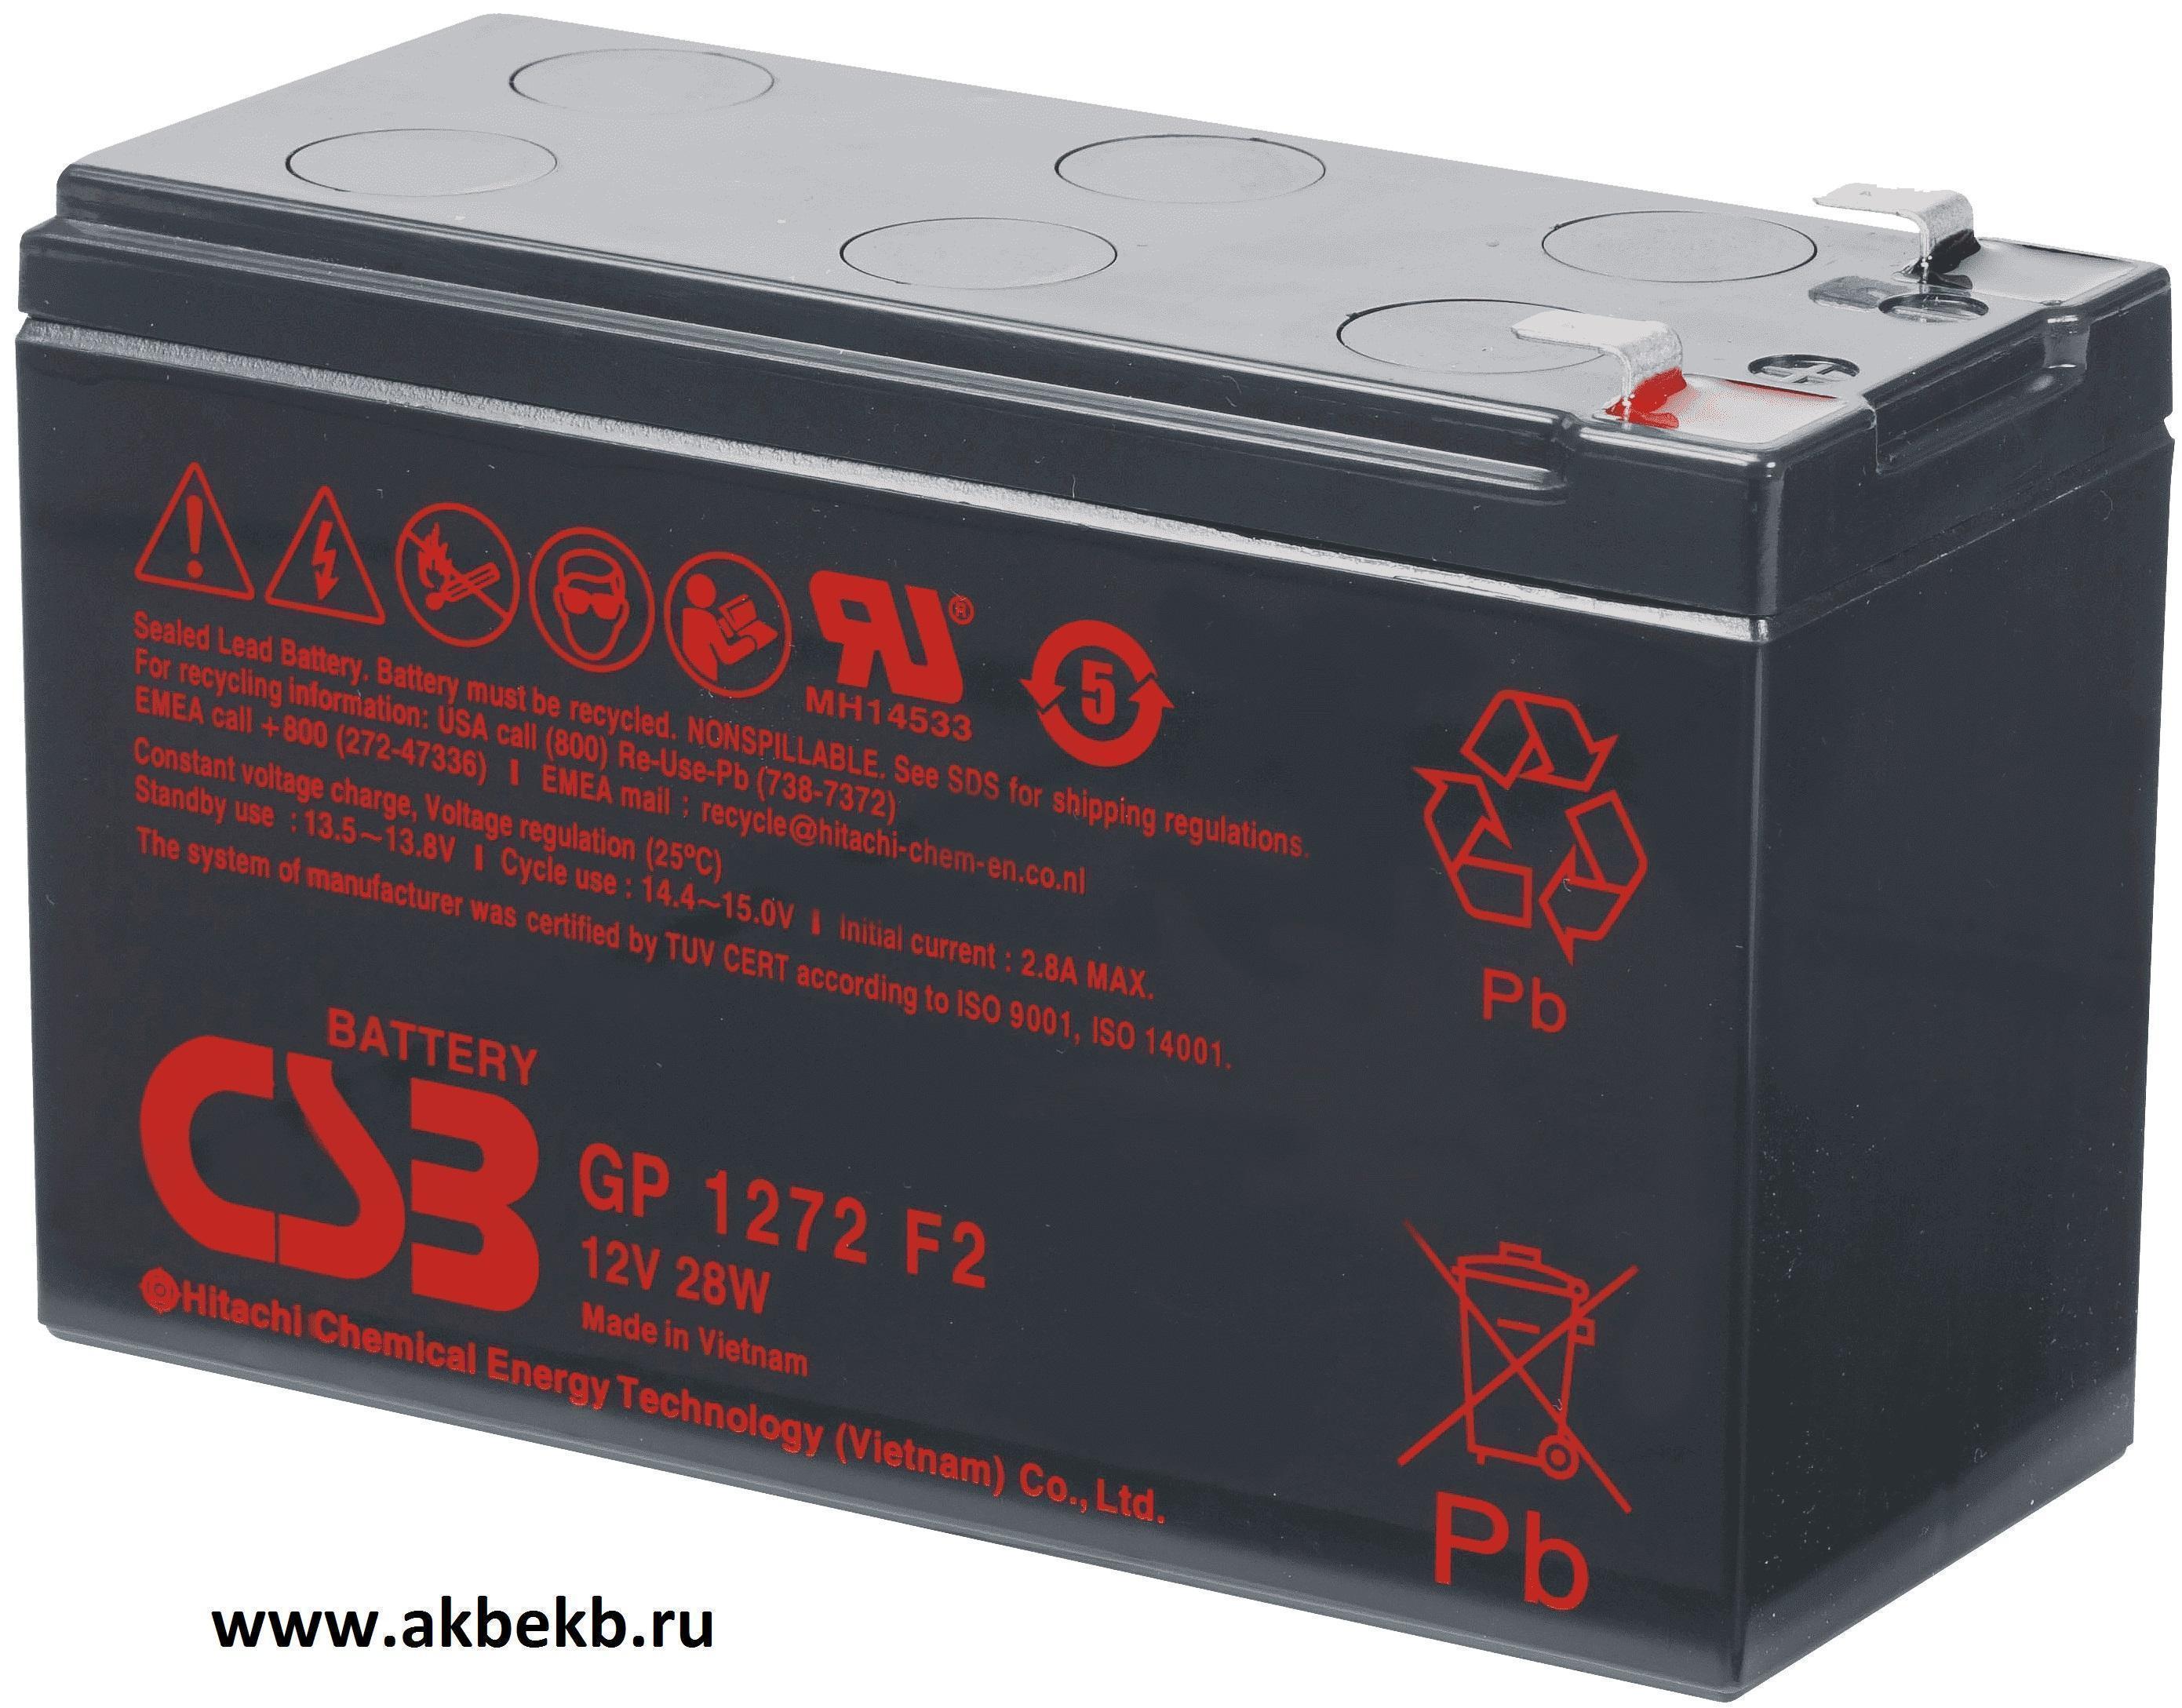 Csb battery. CSB GP 1272 (28w) f2. Батарея аккумуляторная CSB gp1272 (12v/7.2Ah). CSB gp1272 f2 12v/28w. CSB hr1234w.